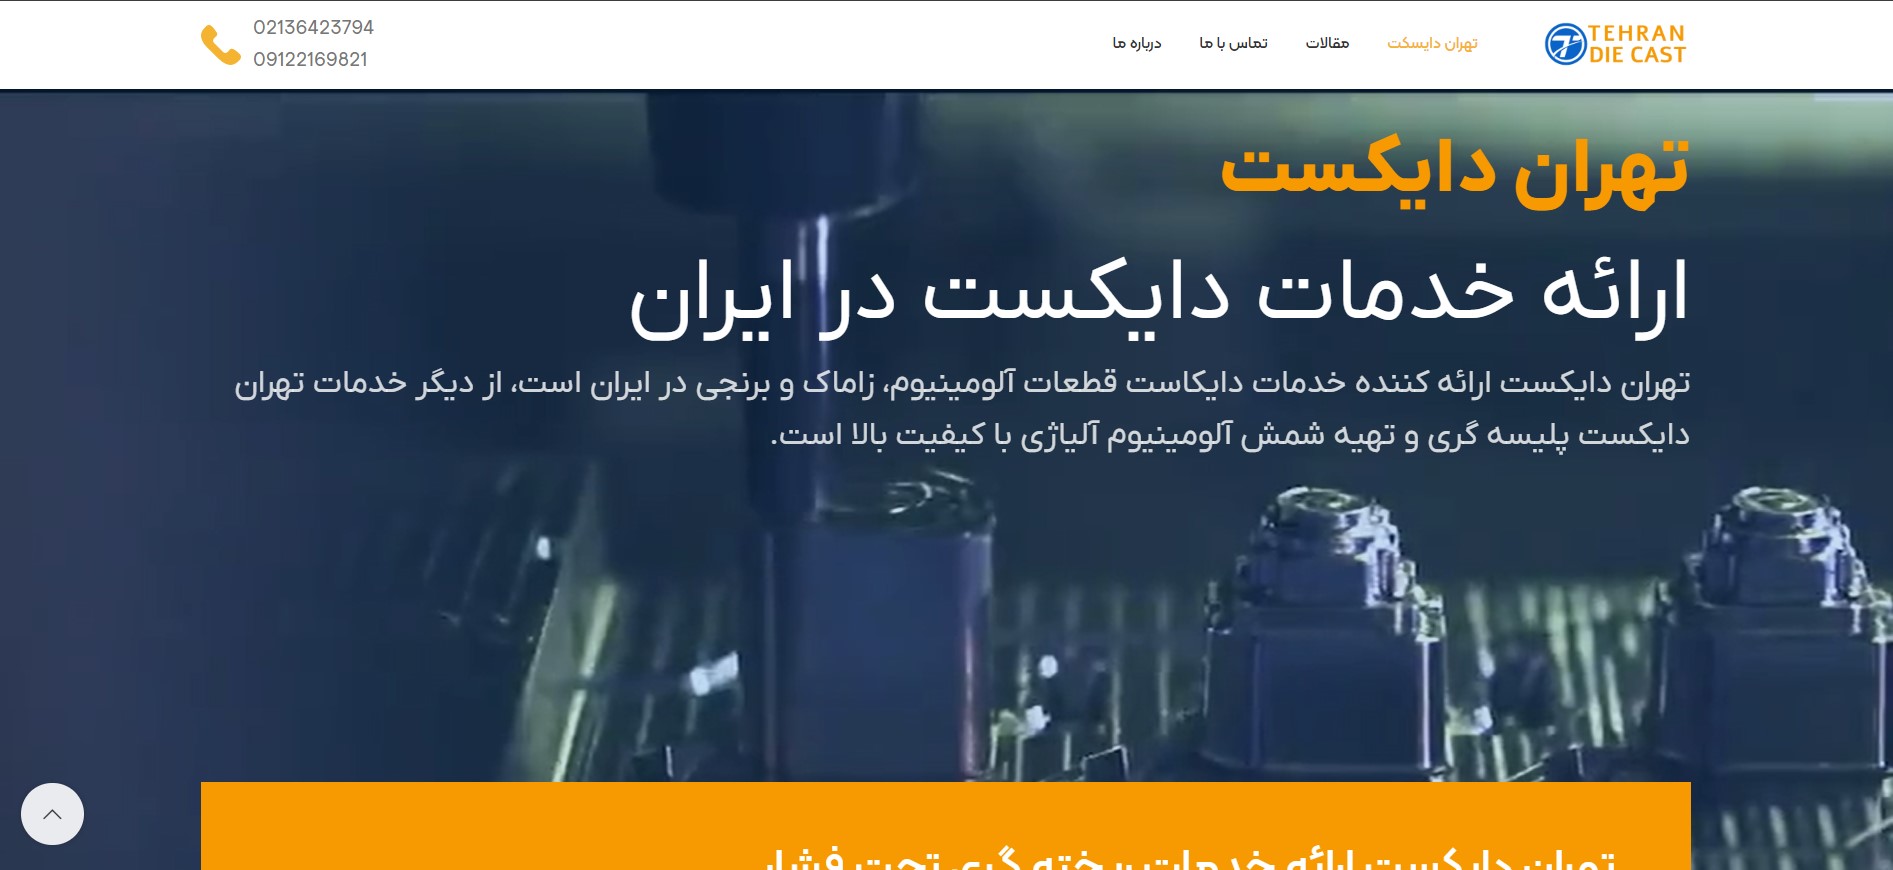 طراحی وب سایت شرکتی تهران دایکست